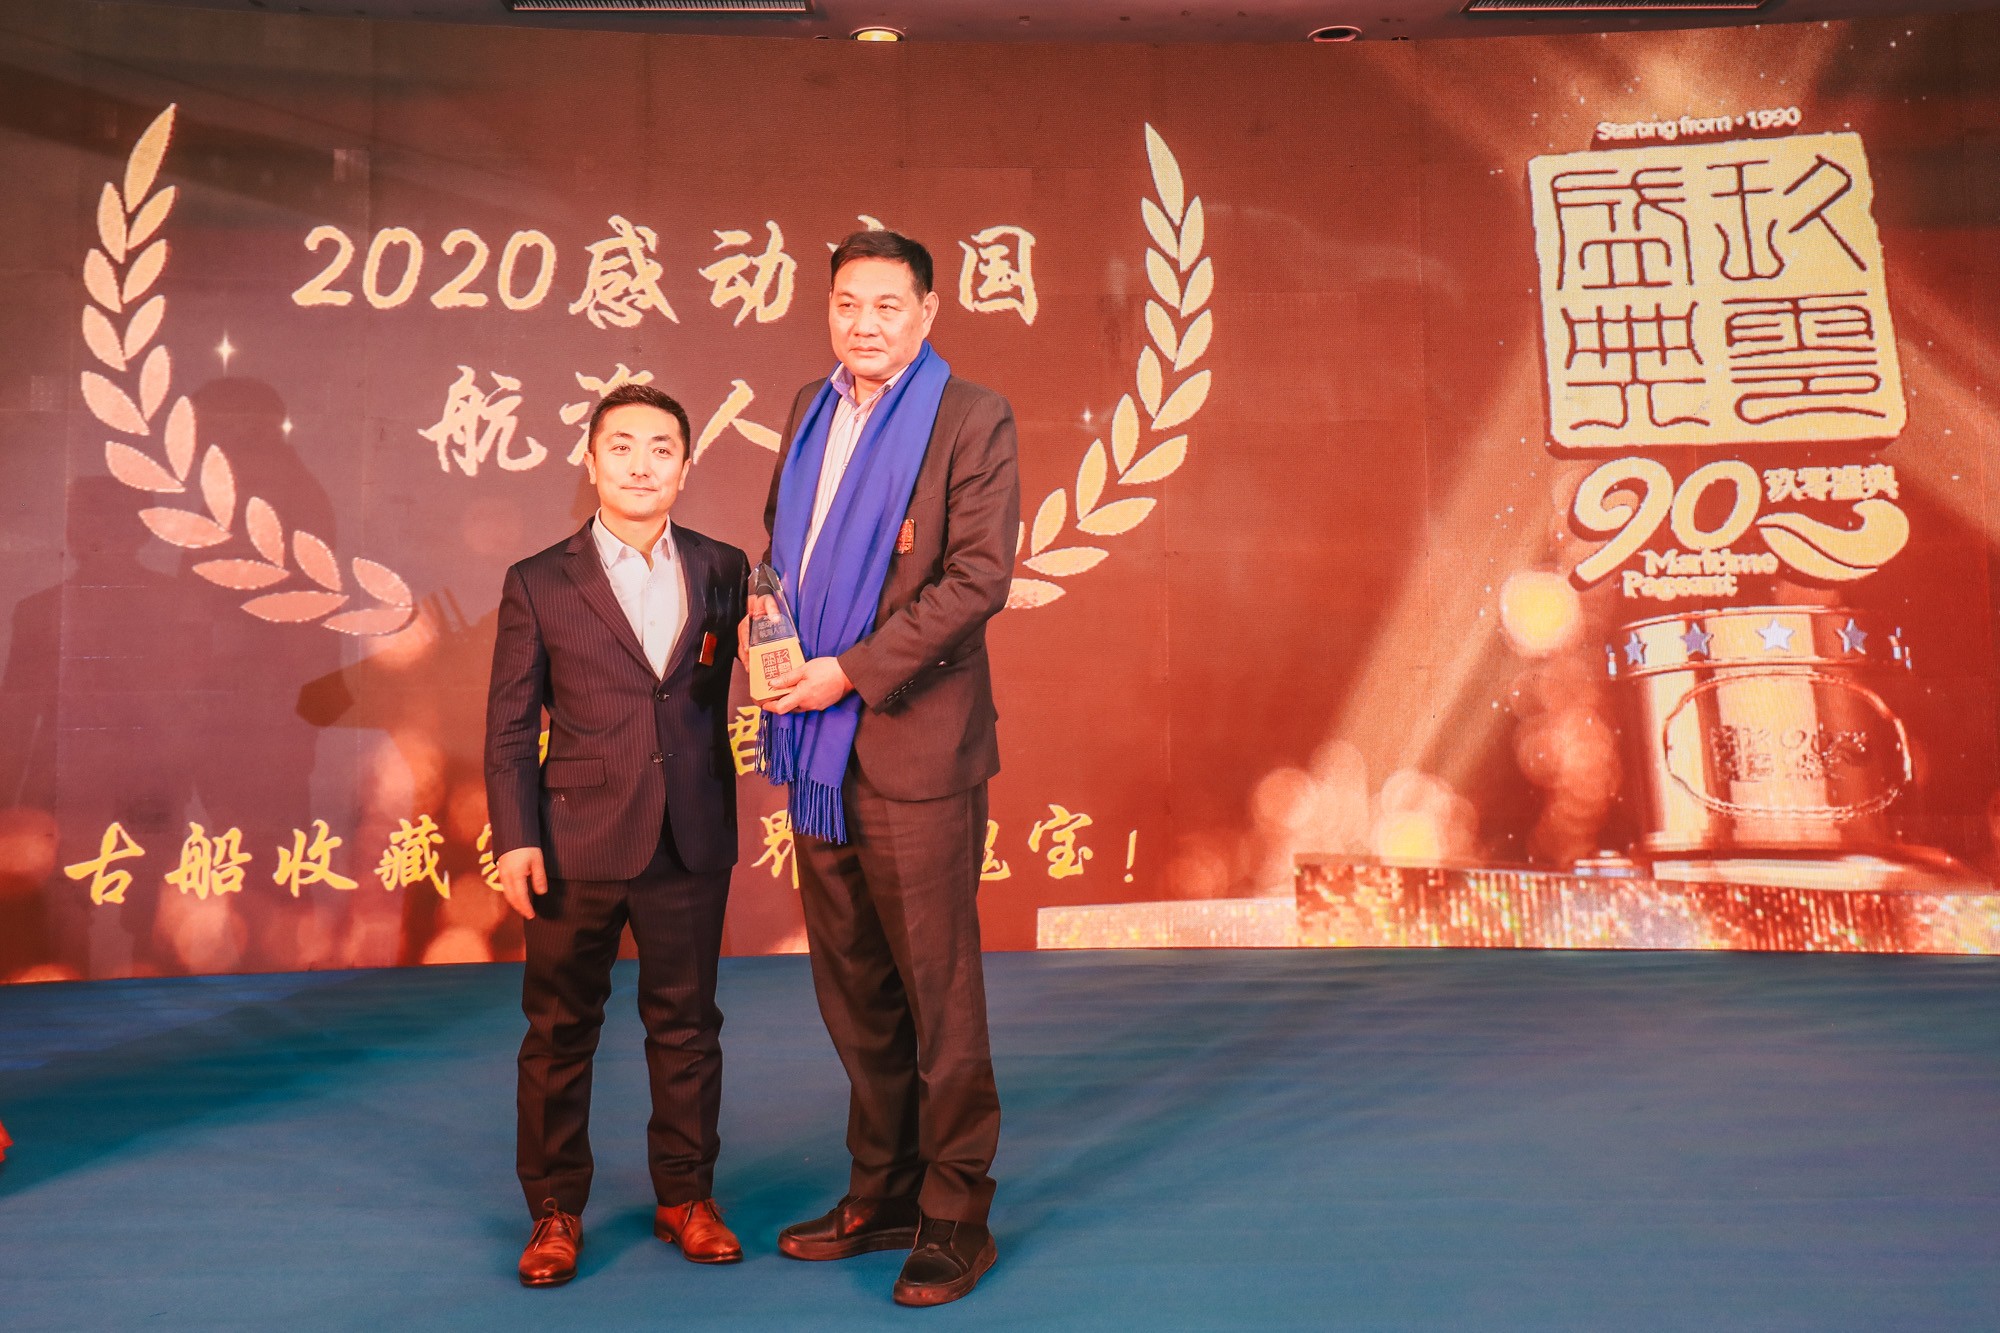 2020感动中国航海人物盛典-颁奖嘉宾我要航海网CEO洪运来为获奖人物尤飞君颁奖.JPG